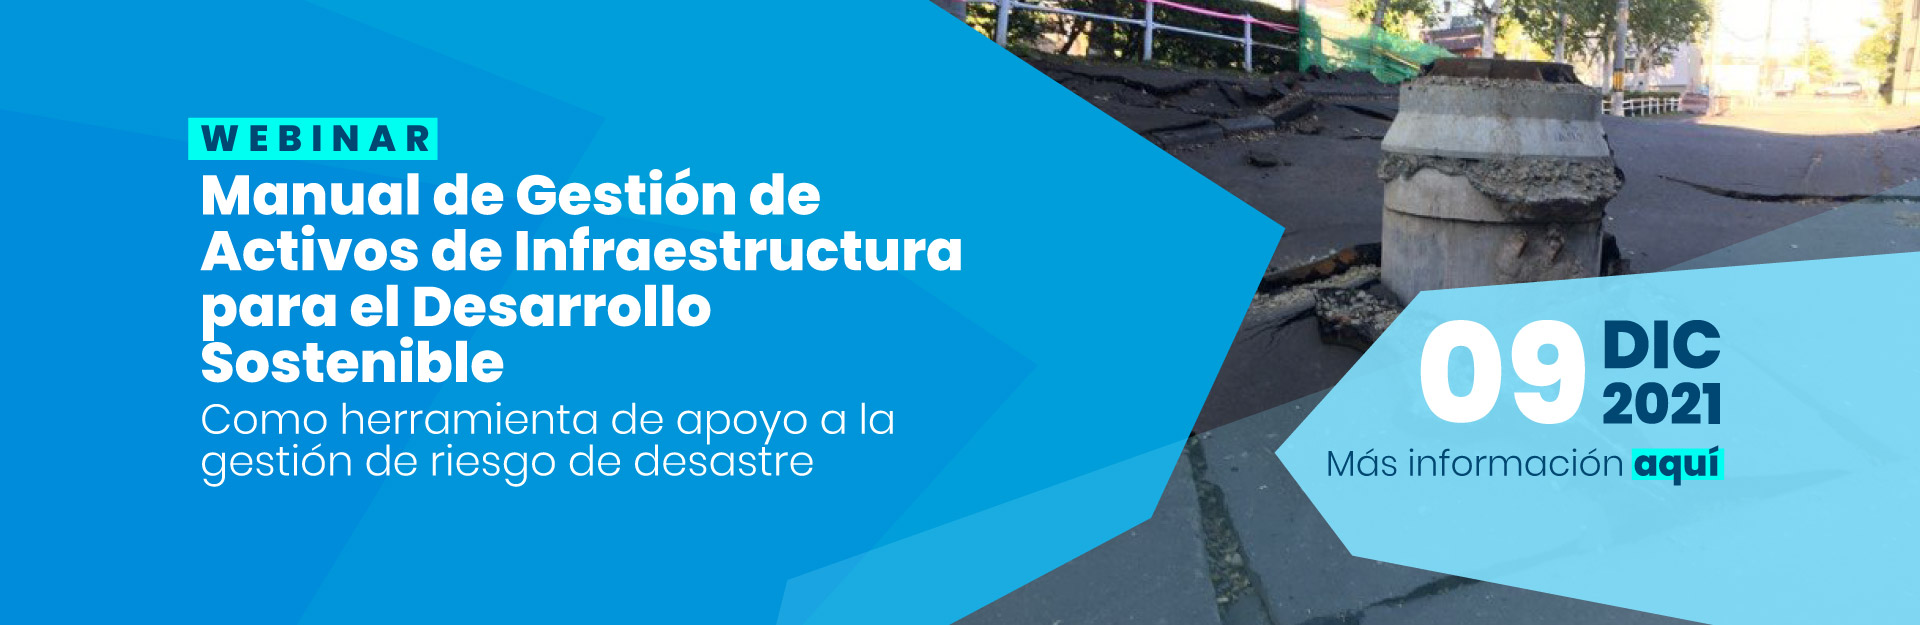 Manual de “Gestión de Activos de Infraestructura para el Desarrollo Sostenible”